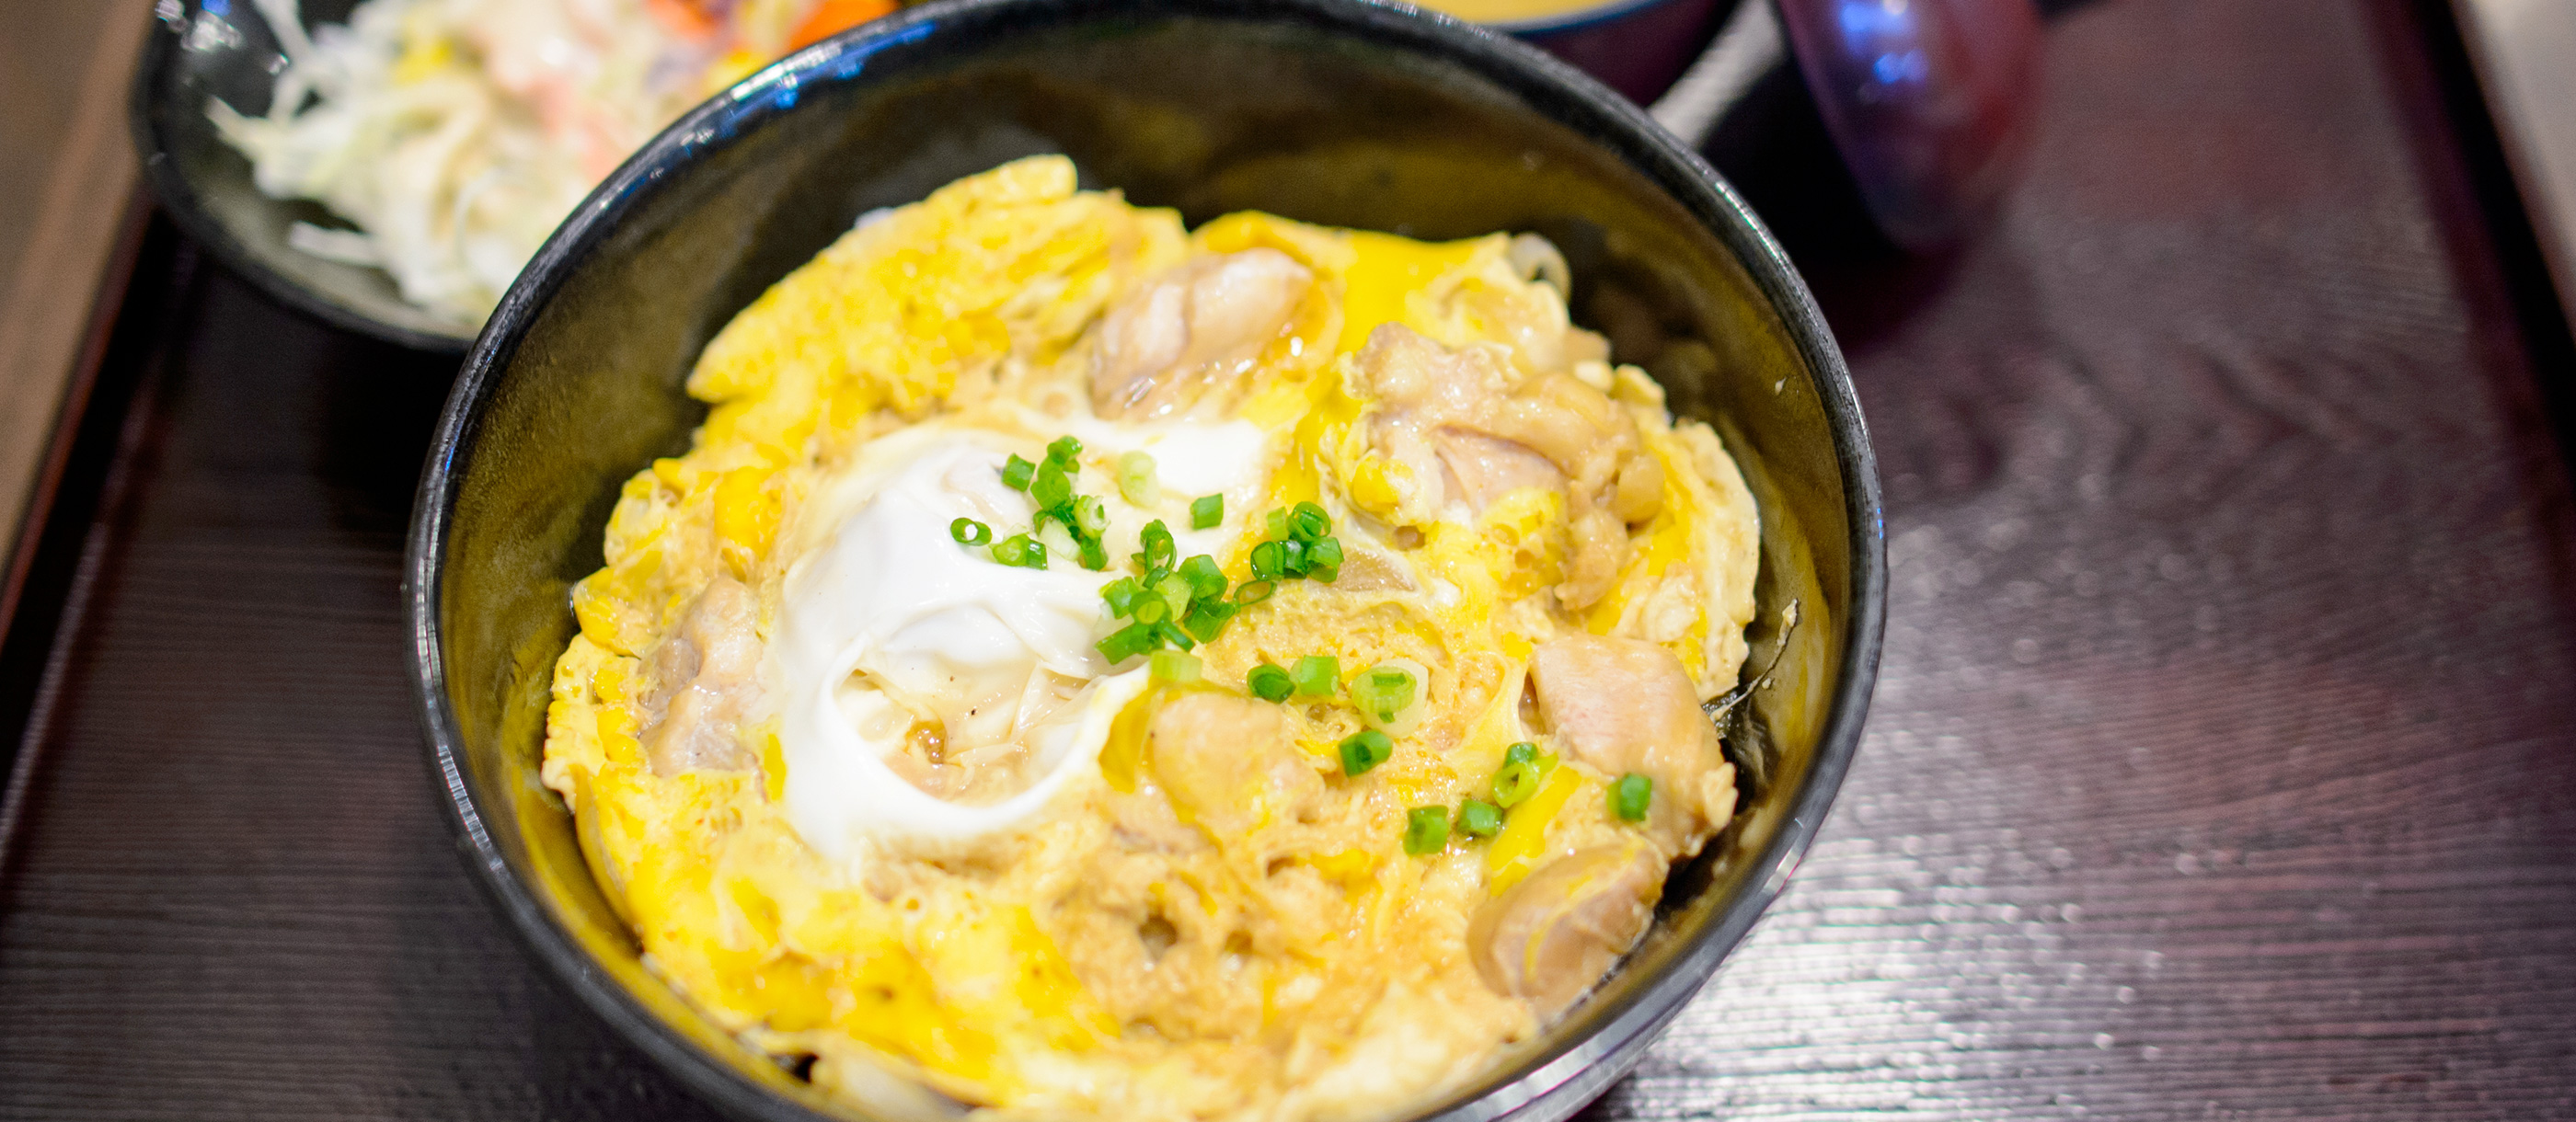 10 Most Popular Japanese Egg Dishes - TasteAtlas